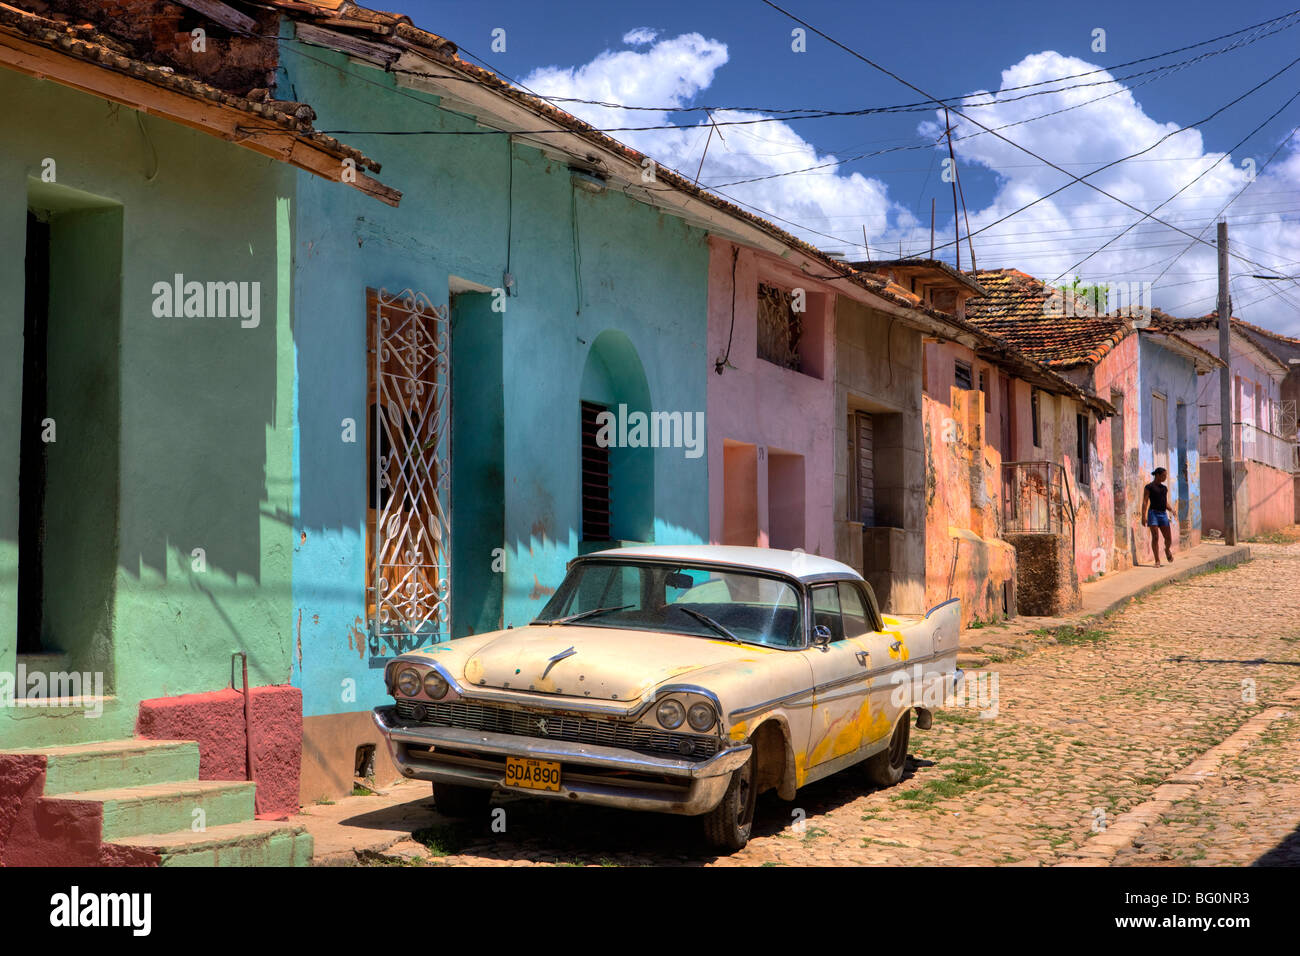 Classic American voiture garée sur la rue pavée à l'extérieur des maisons peintes de couleurs vives, Trinidad, Cuba, Antilles, Amérique Centrale Banque D'Images